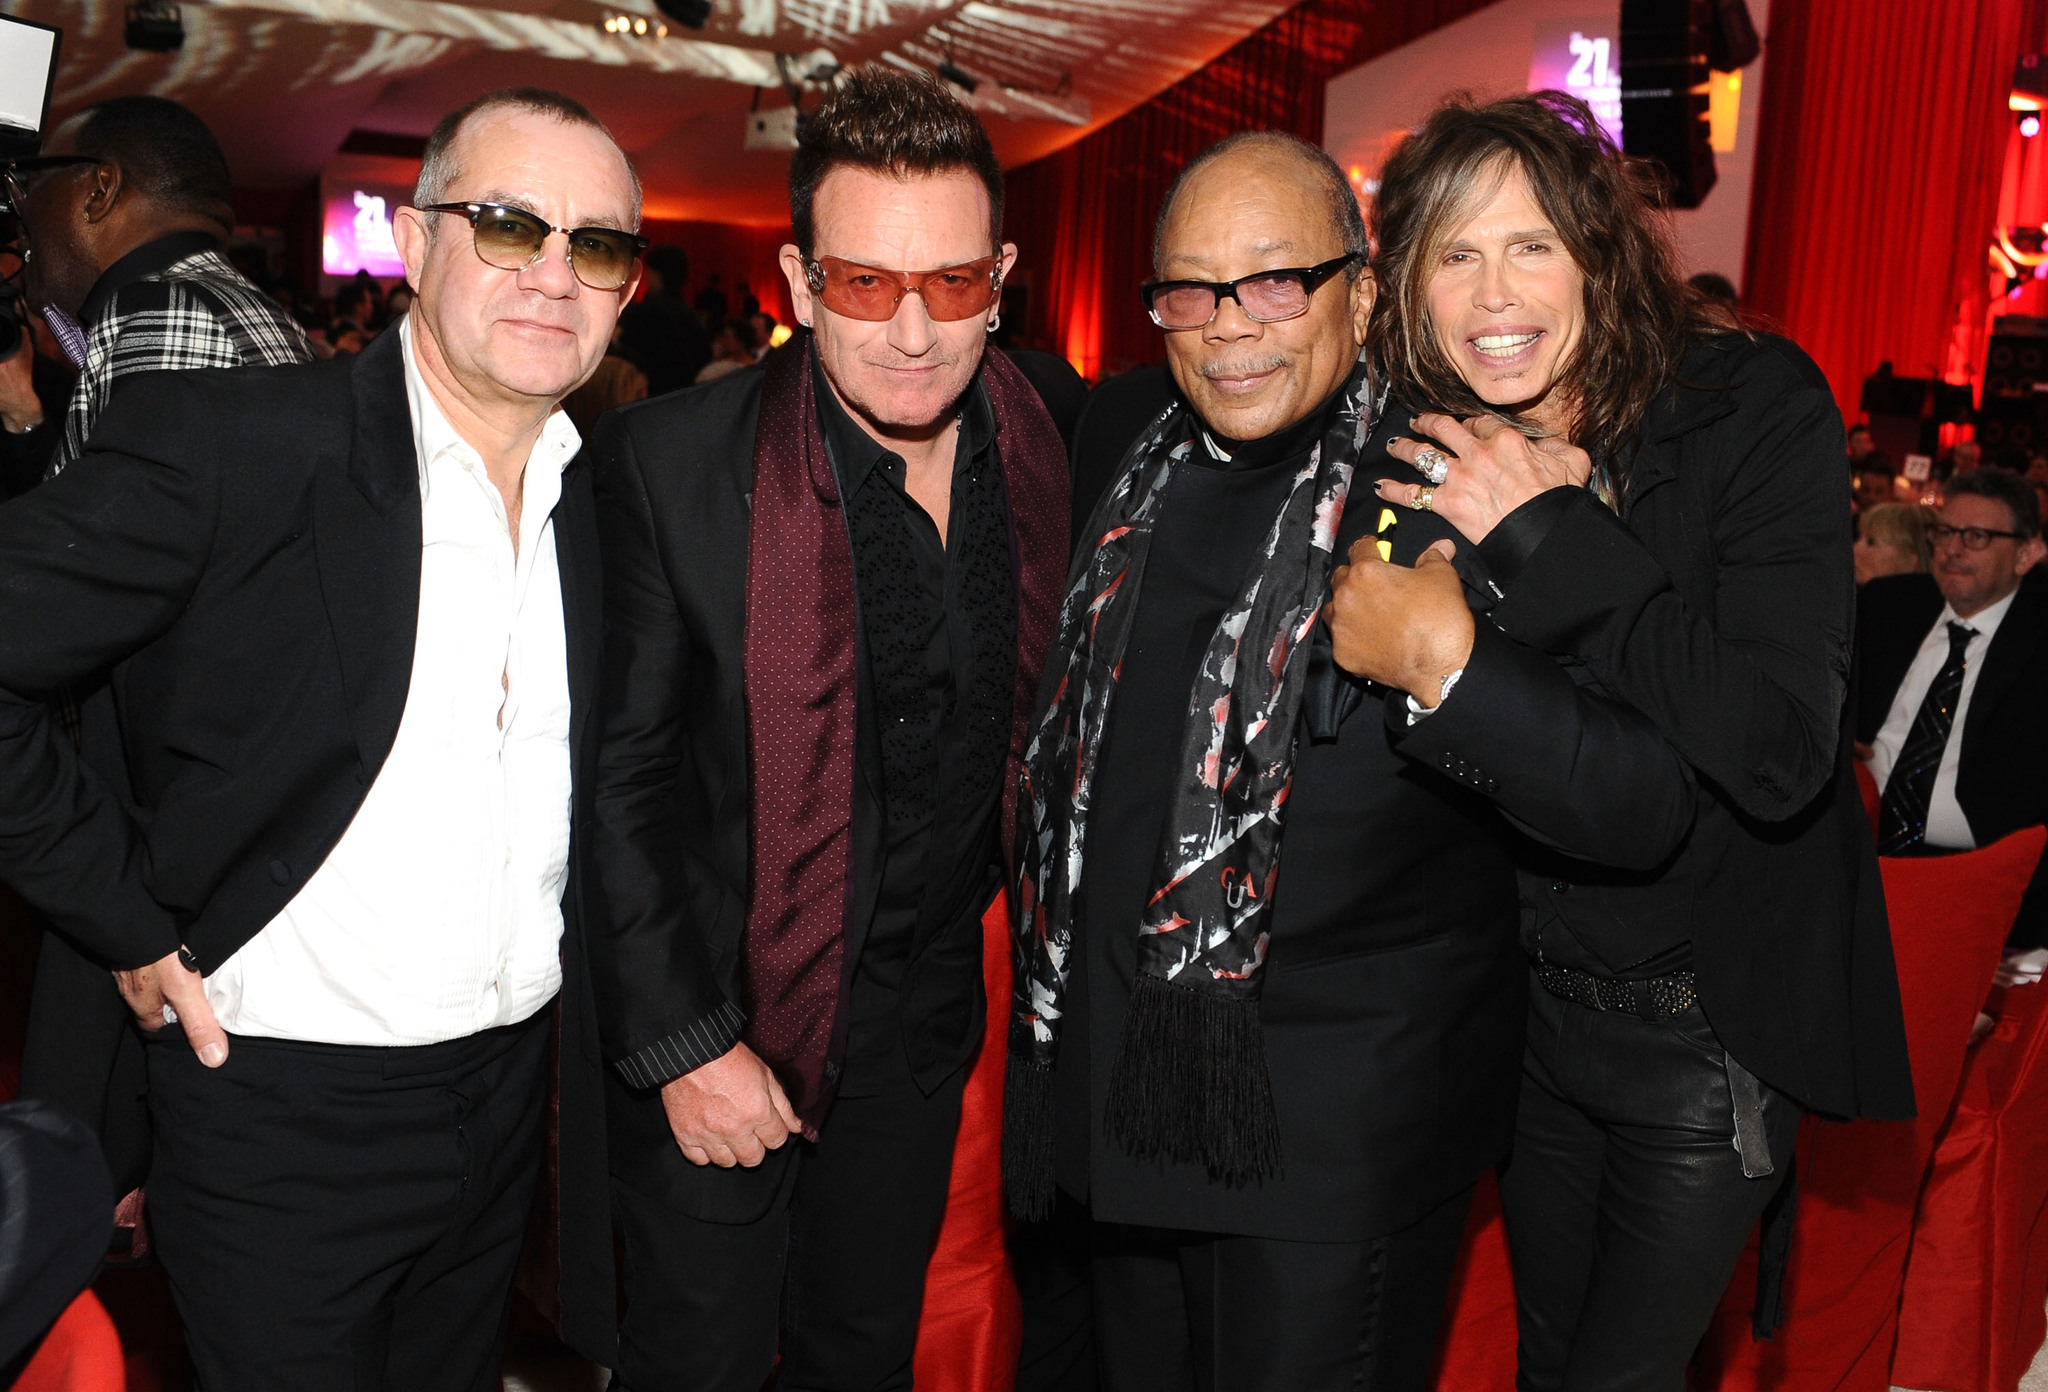 Quincy Jones, Bernie Taupin, Bono and Steven Tyler